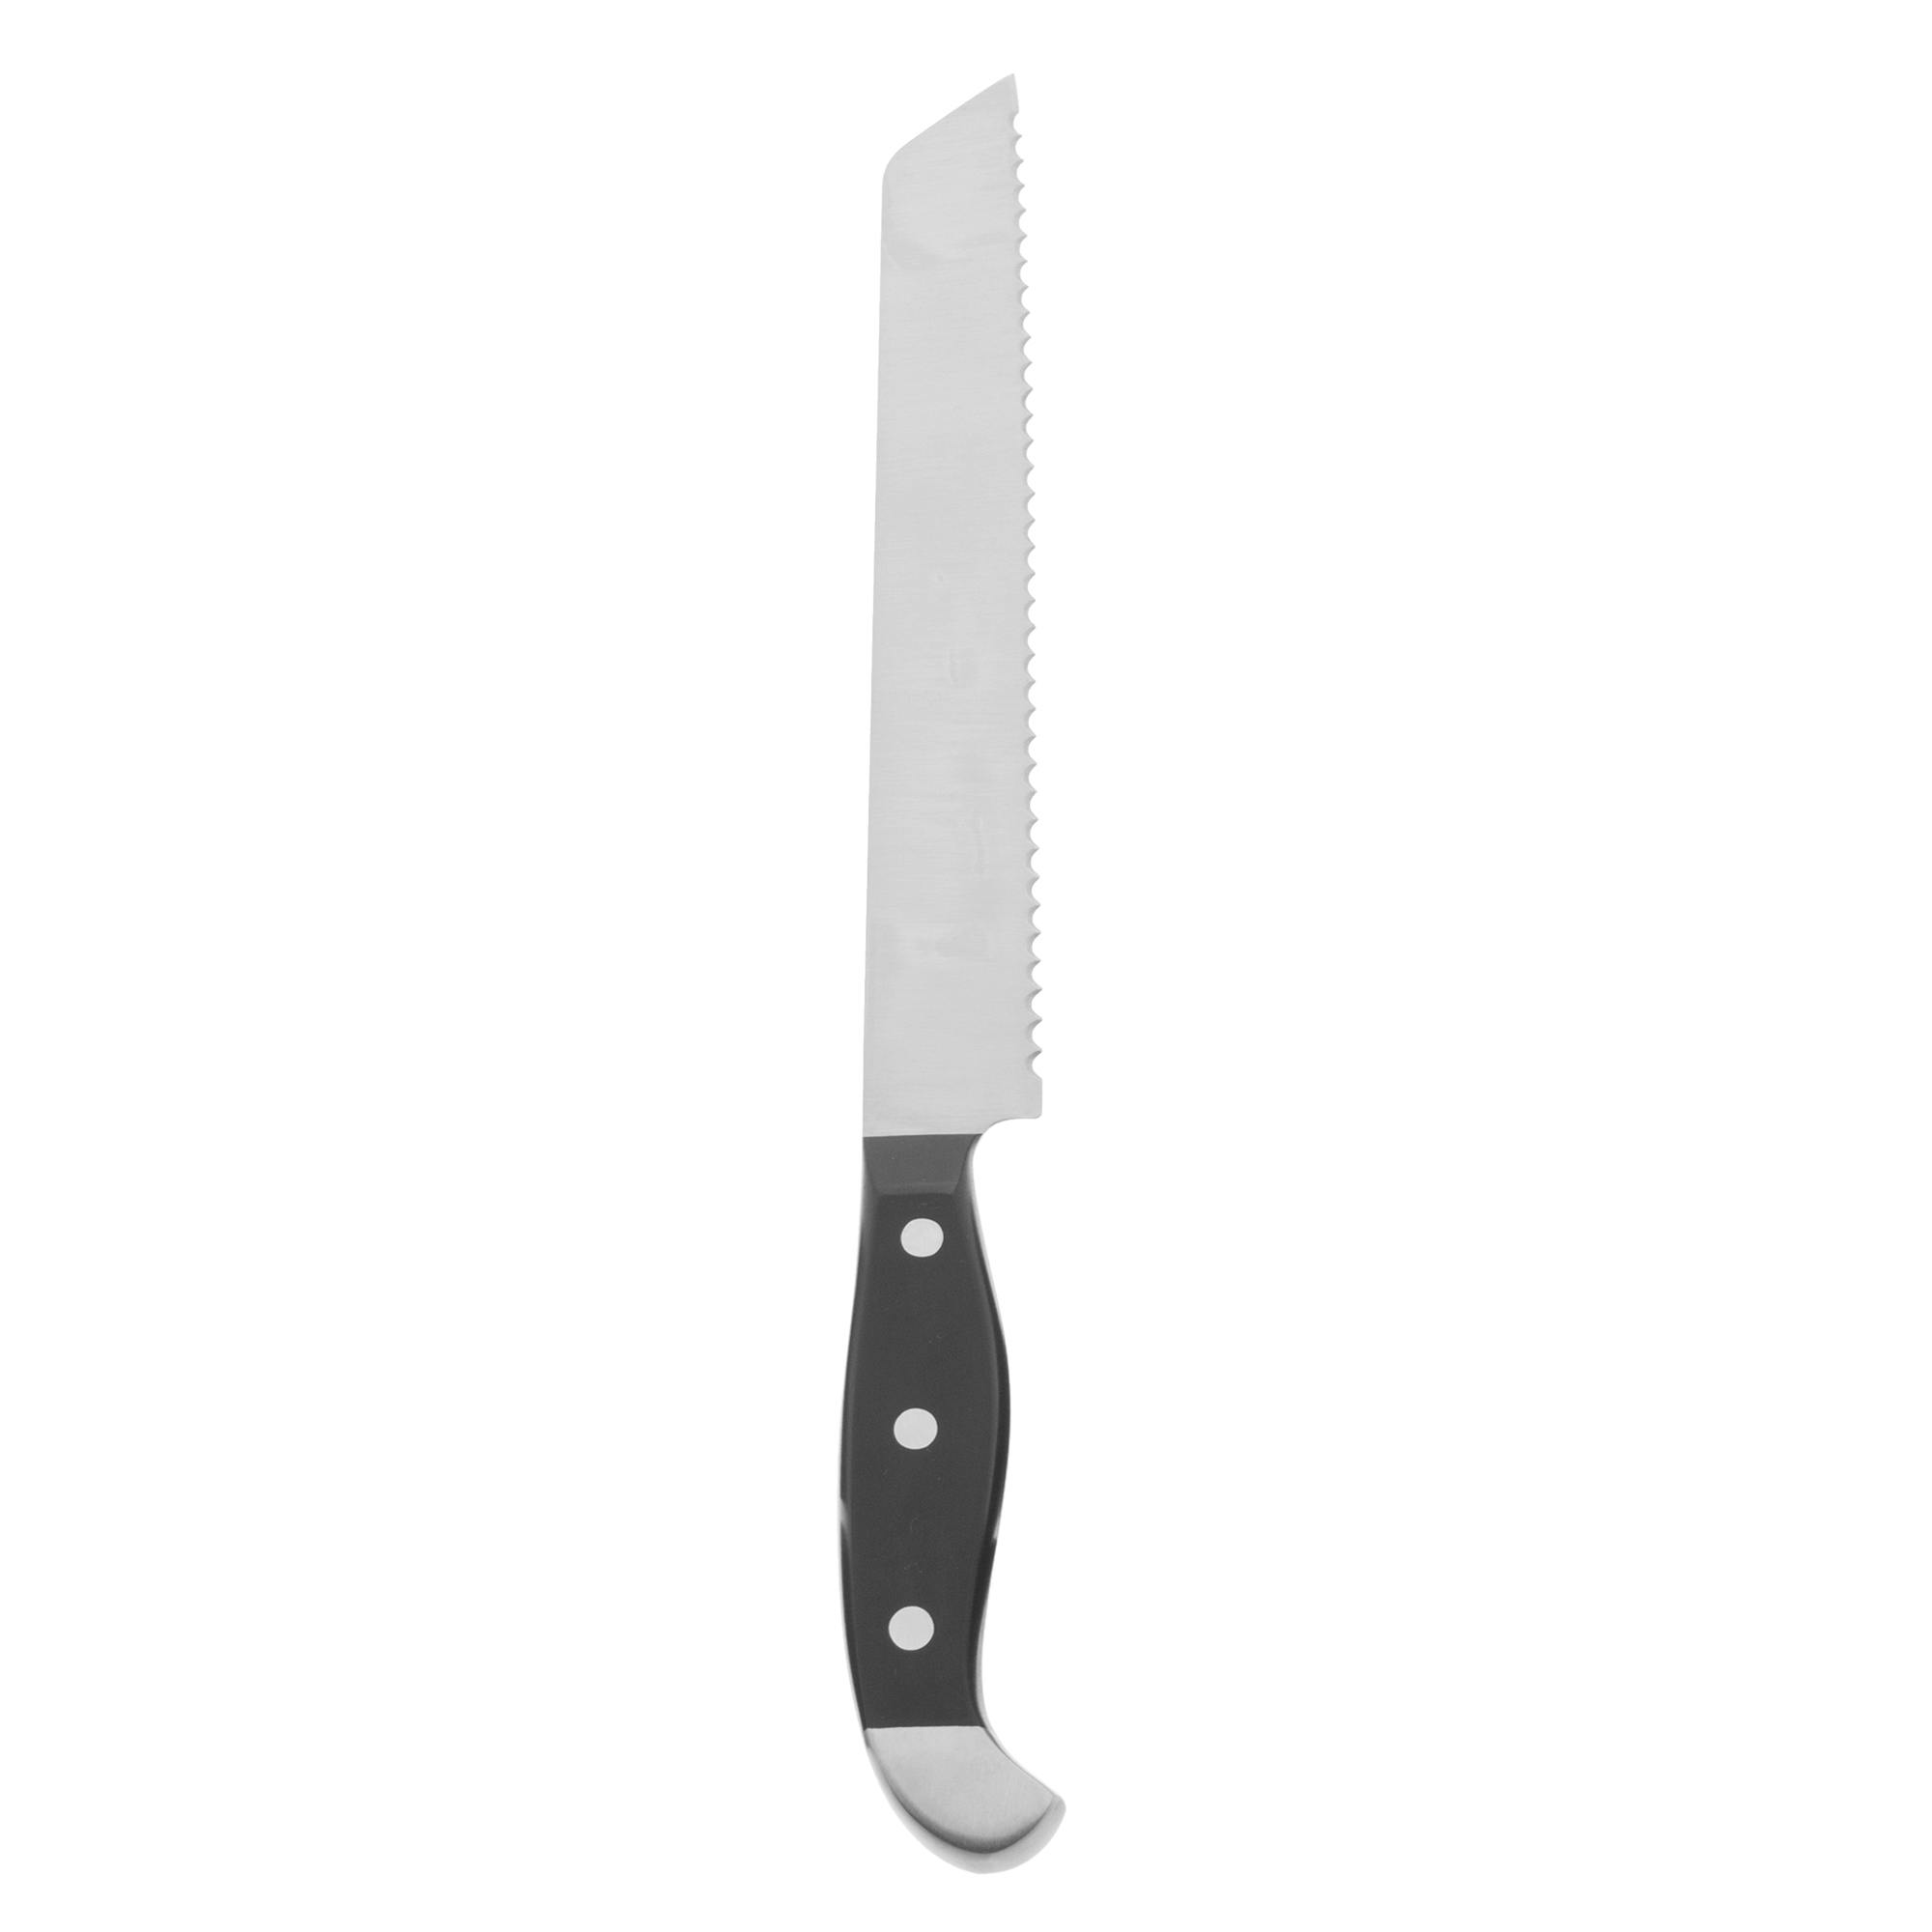 Henckels Statement 8-inch Bread Knife